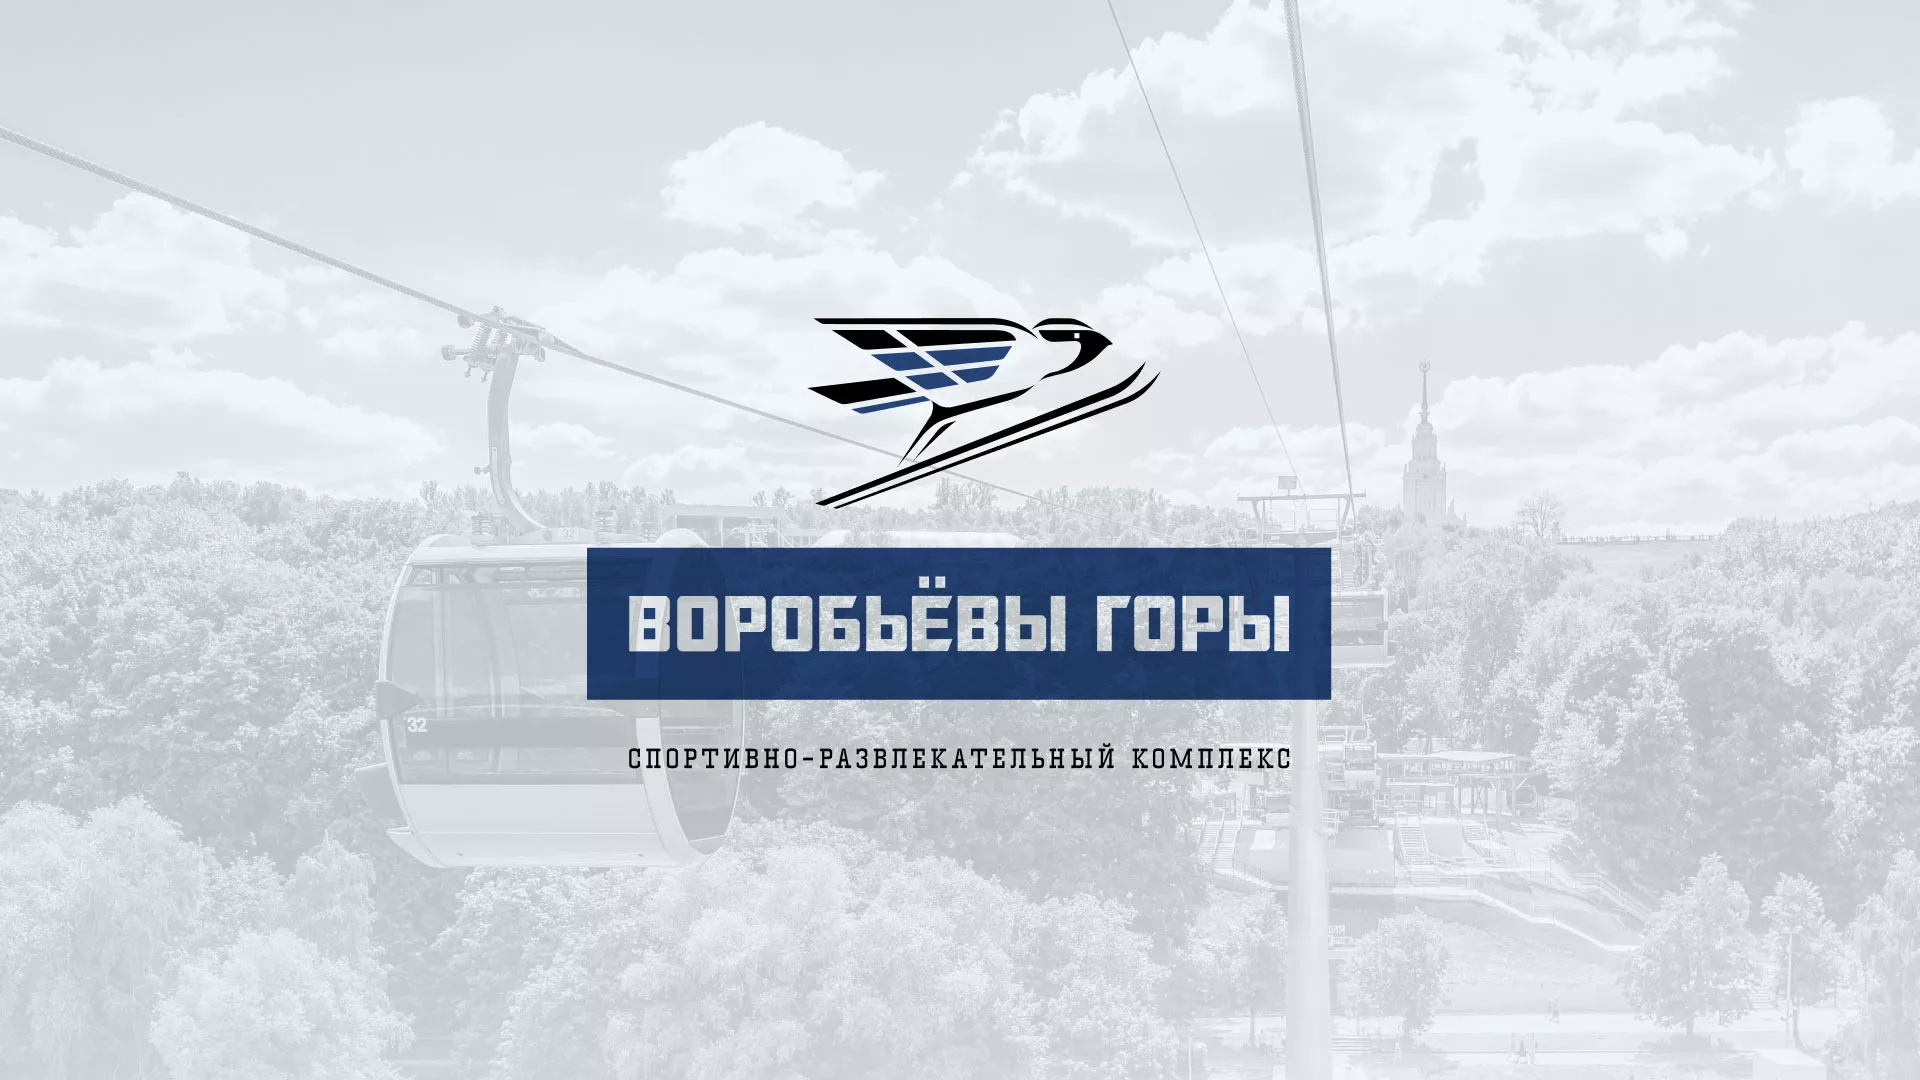 Разработка сайта в Видном для спортивно-развлекательного комплекса «Воробьёвы горы»